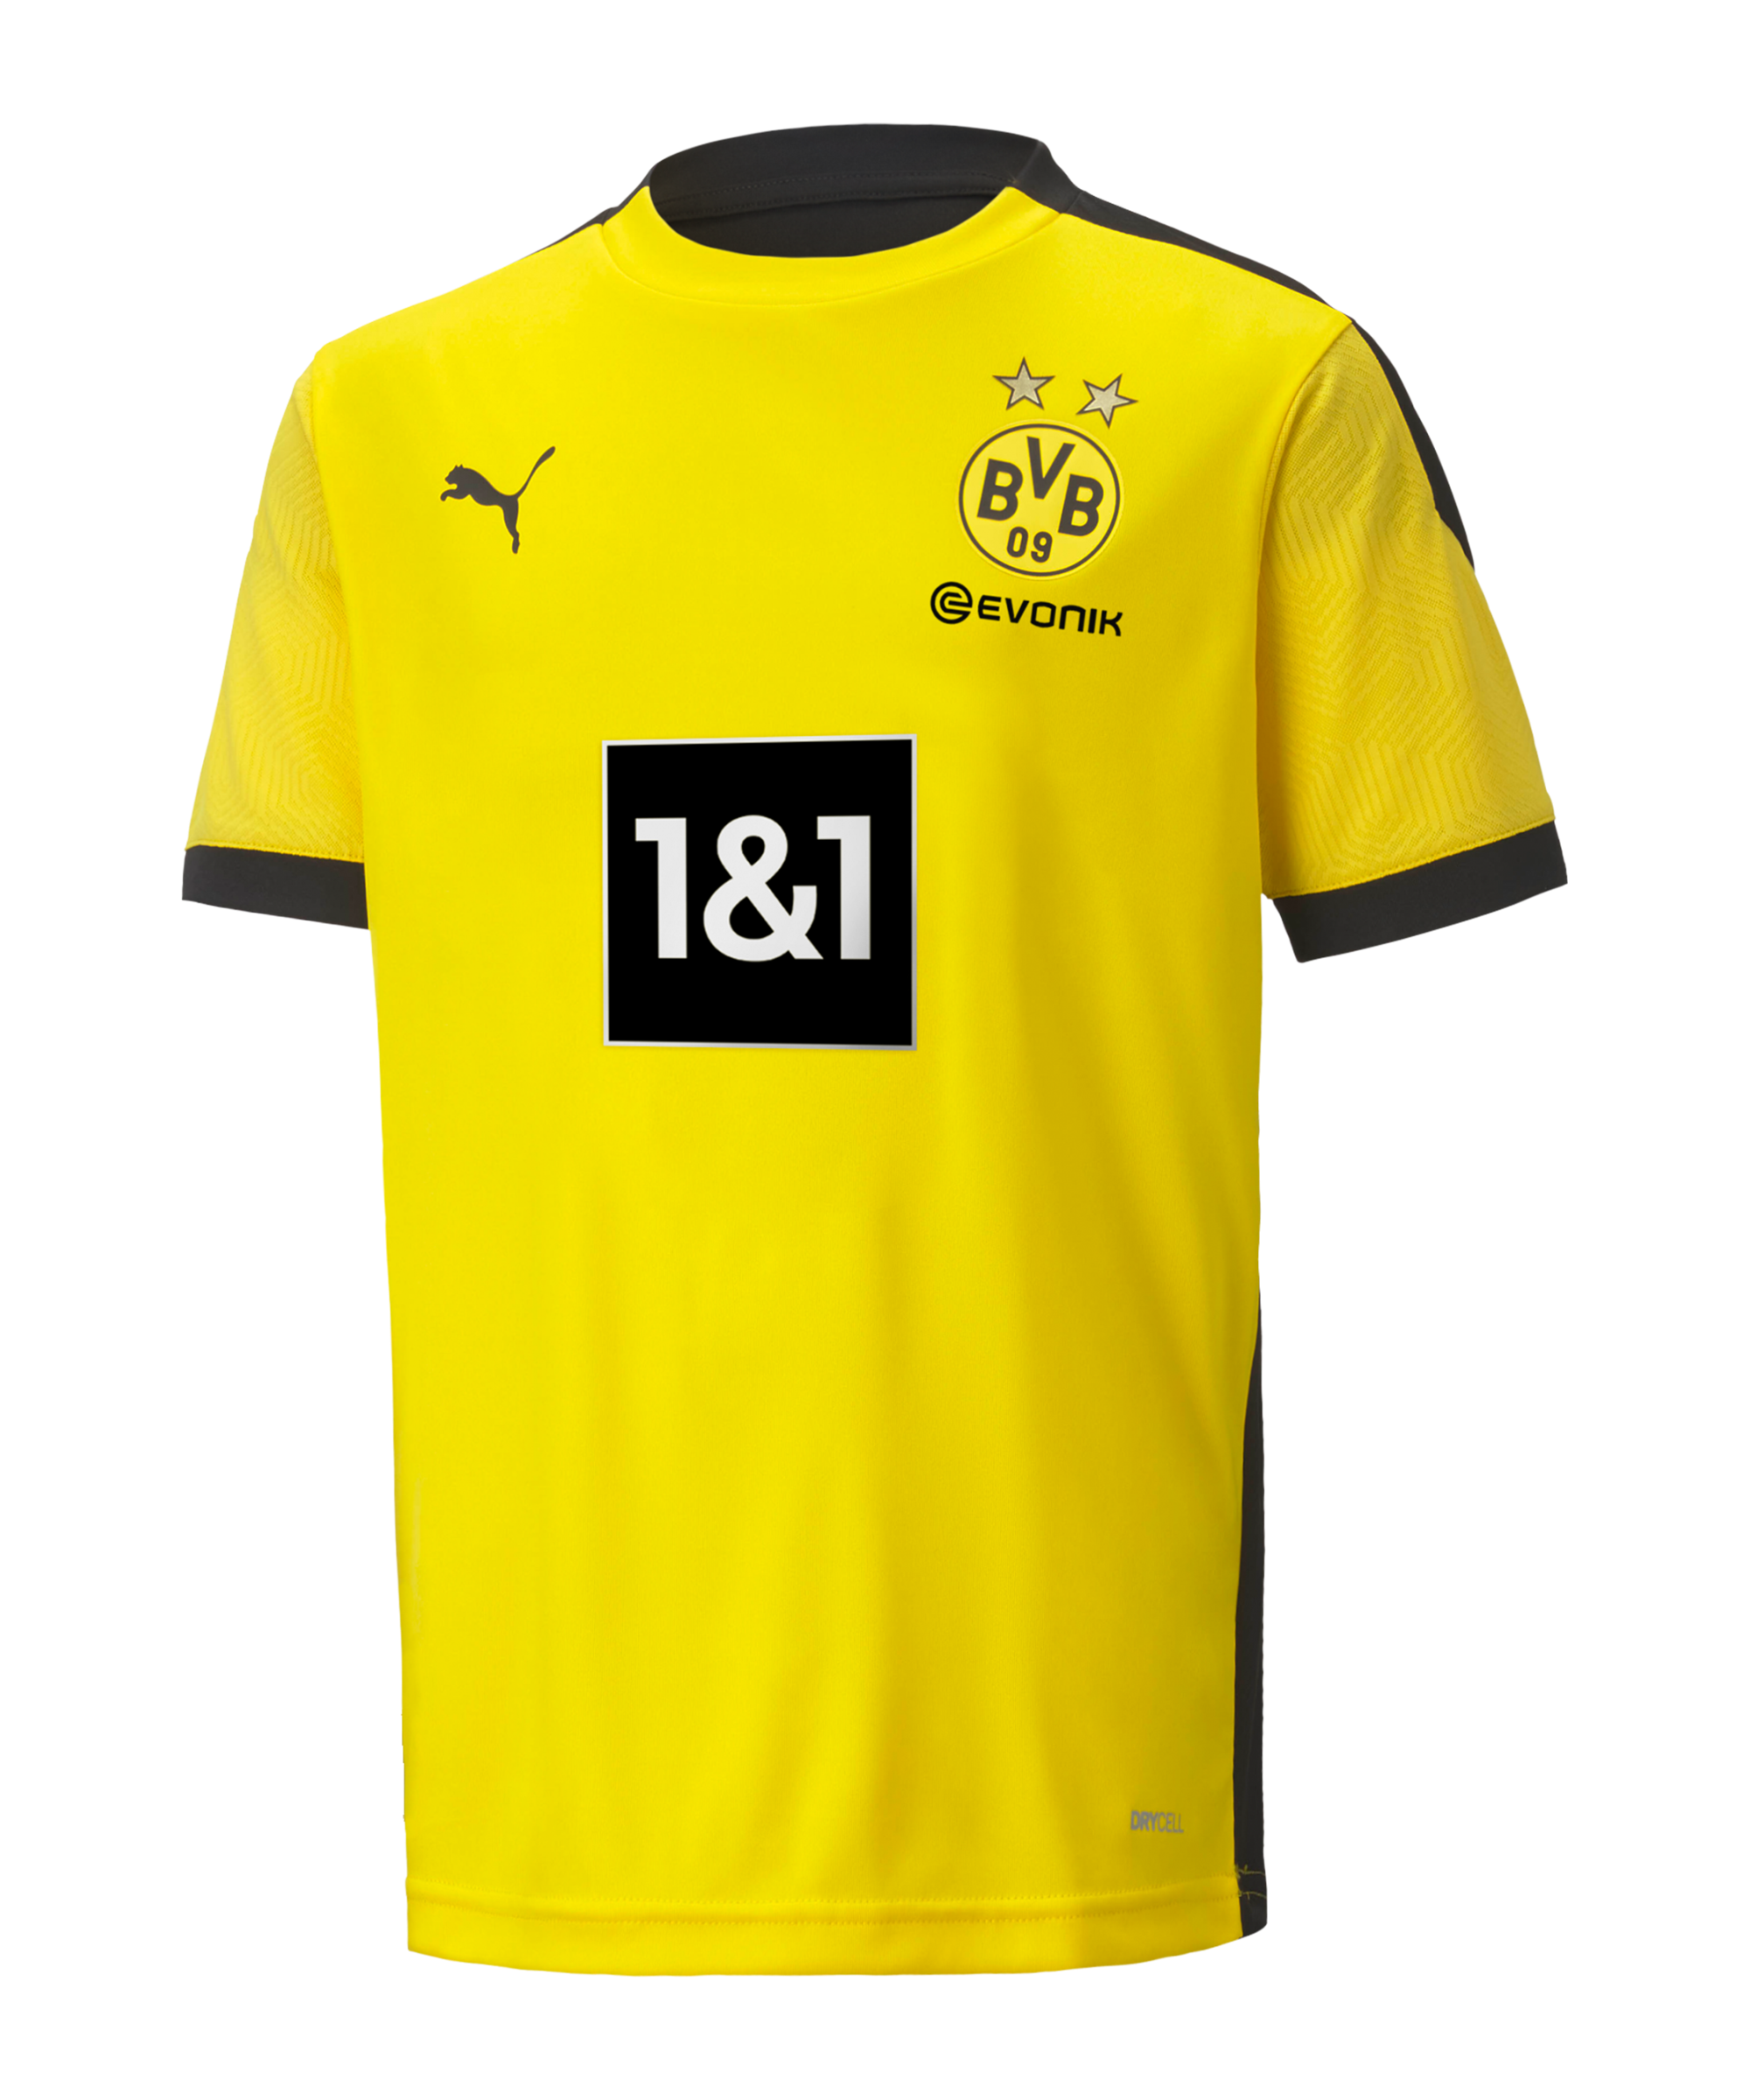 PUMA BVB Dortmund Training T-Shirt Kids - Yellow